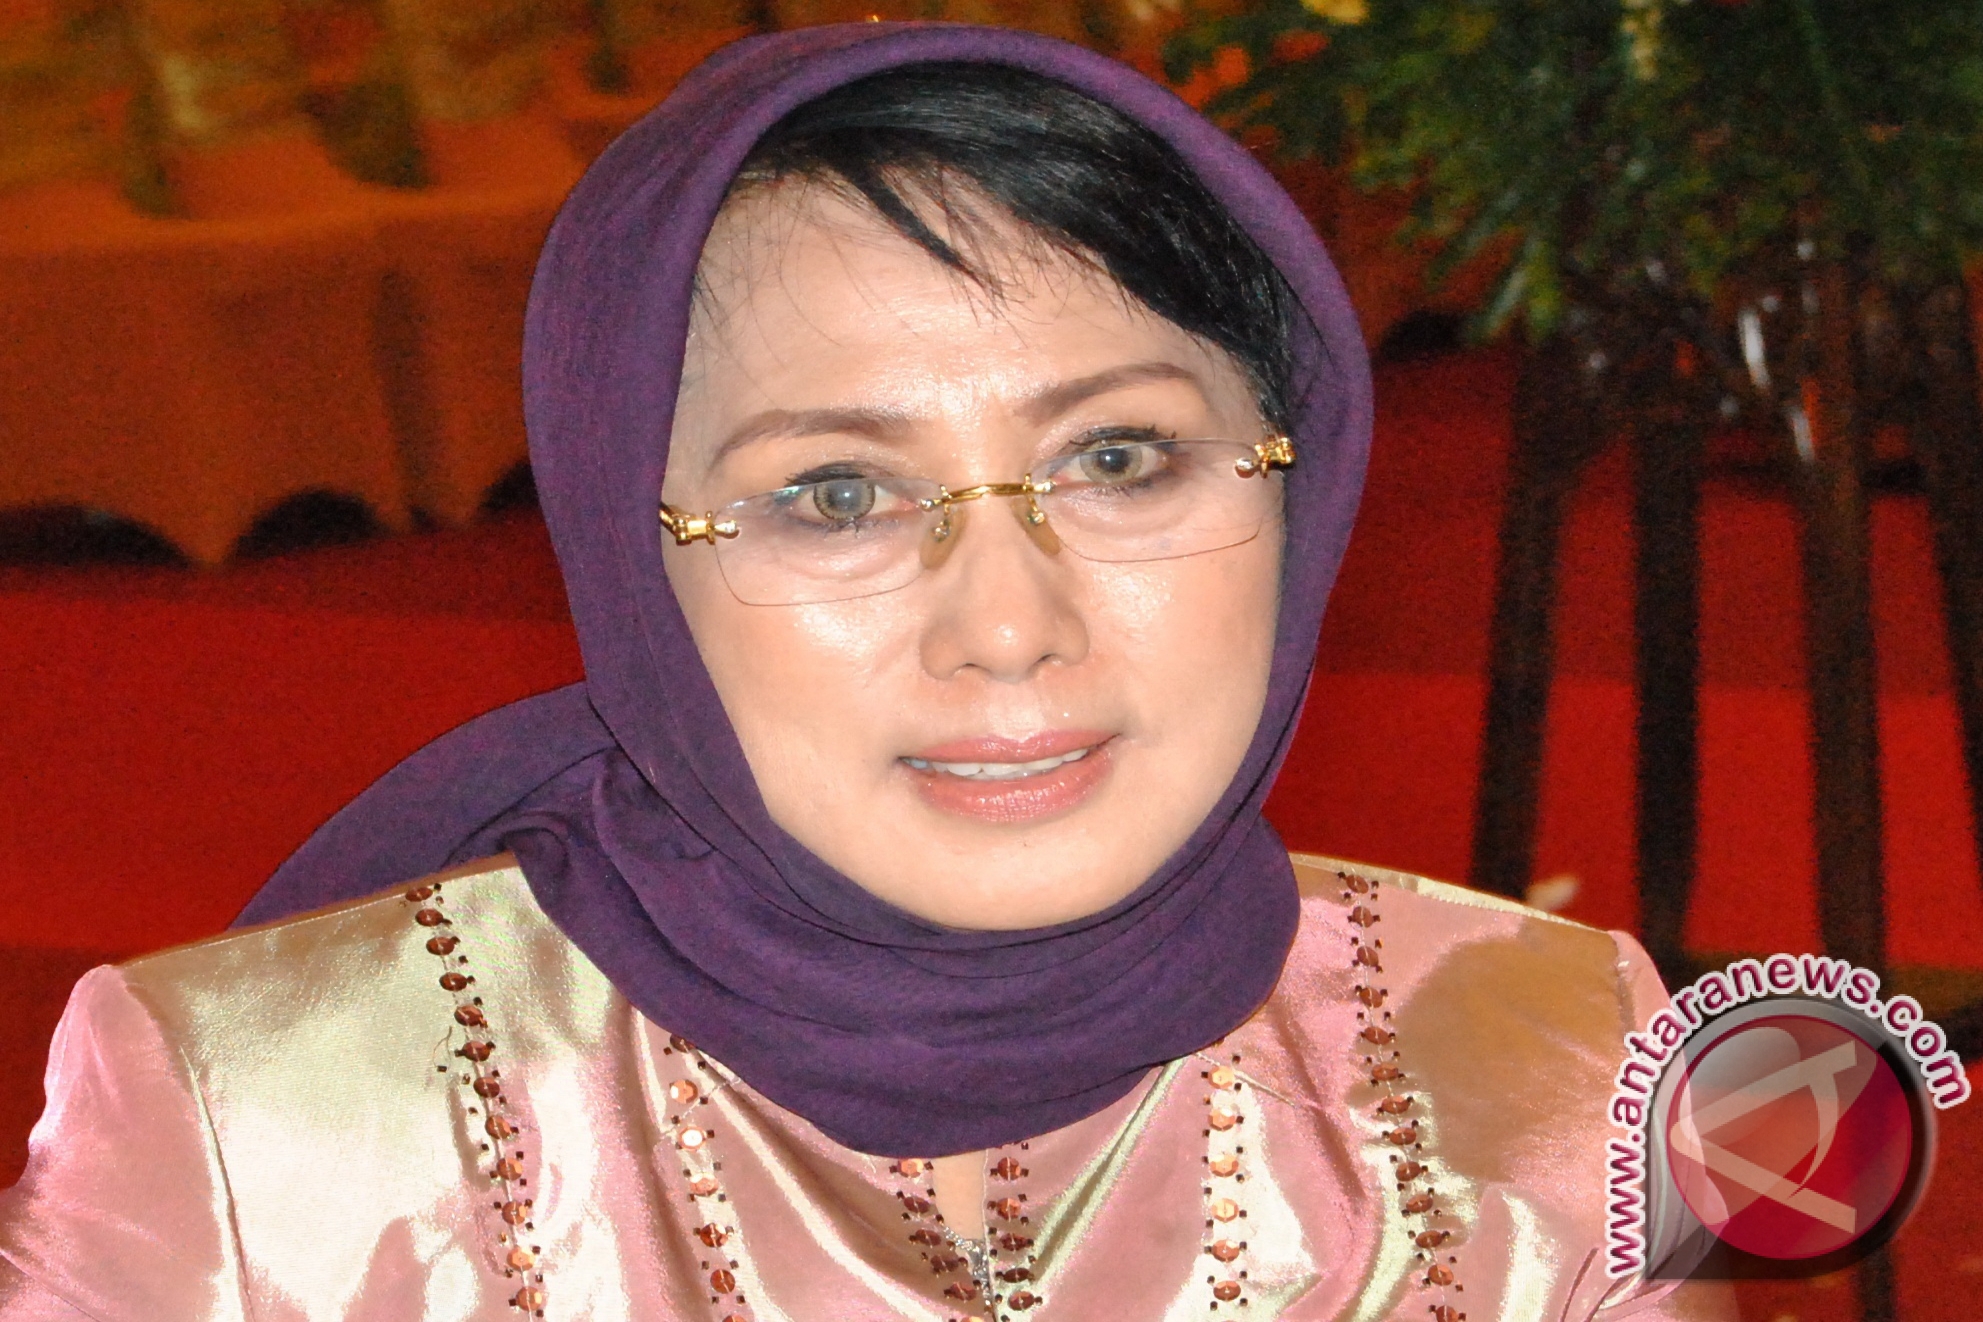 Puji Astuti Serahkan Bantuan Provinsi untuk 27 Kelompok Tani - 20130105hj-puji-astuti